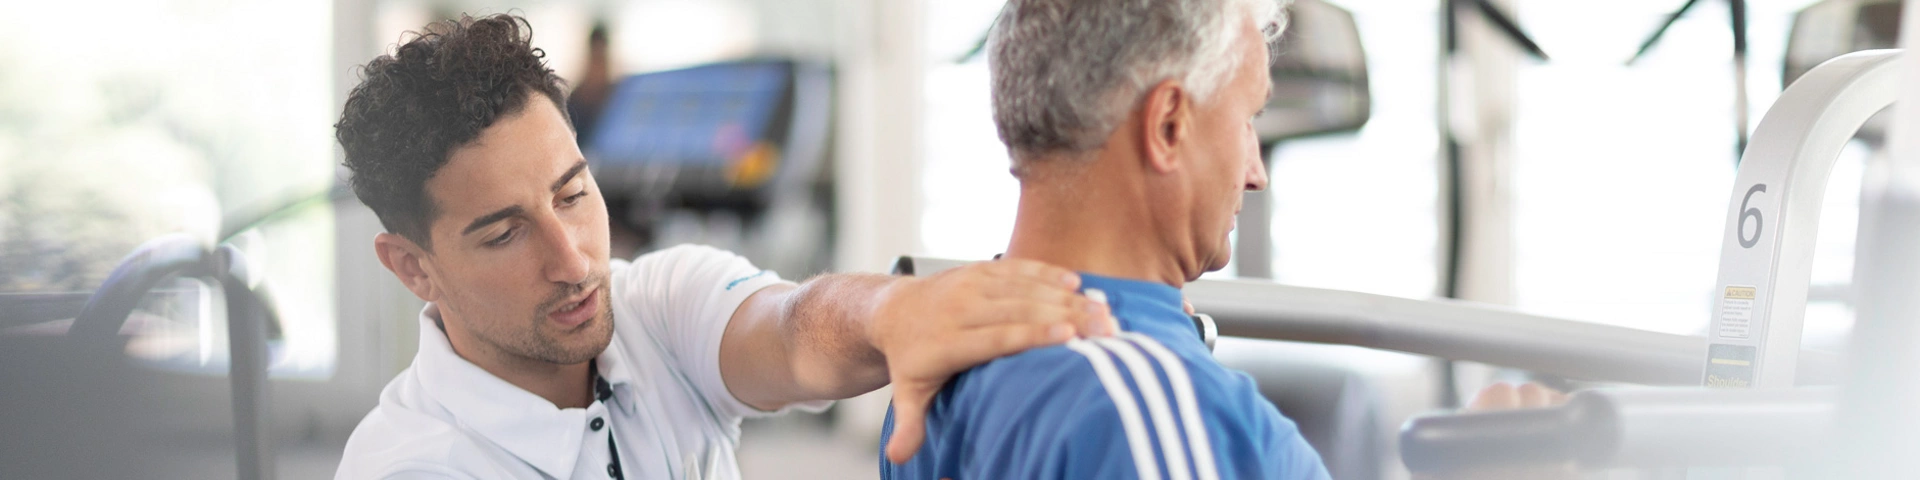 physical rehabilitation clinics zurich Institut für Physiotherapie - Klinik Hirslanden